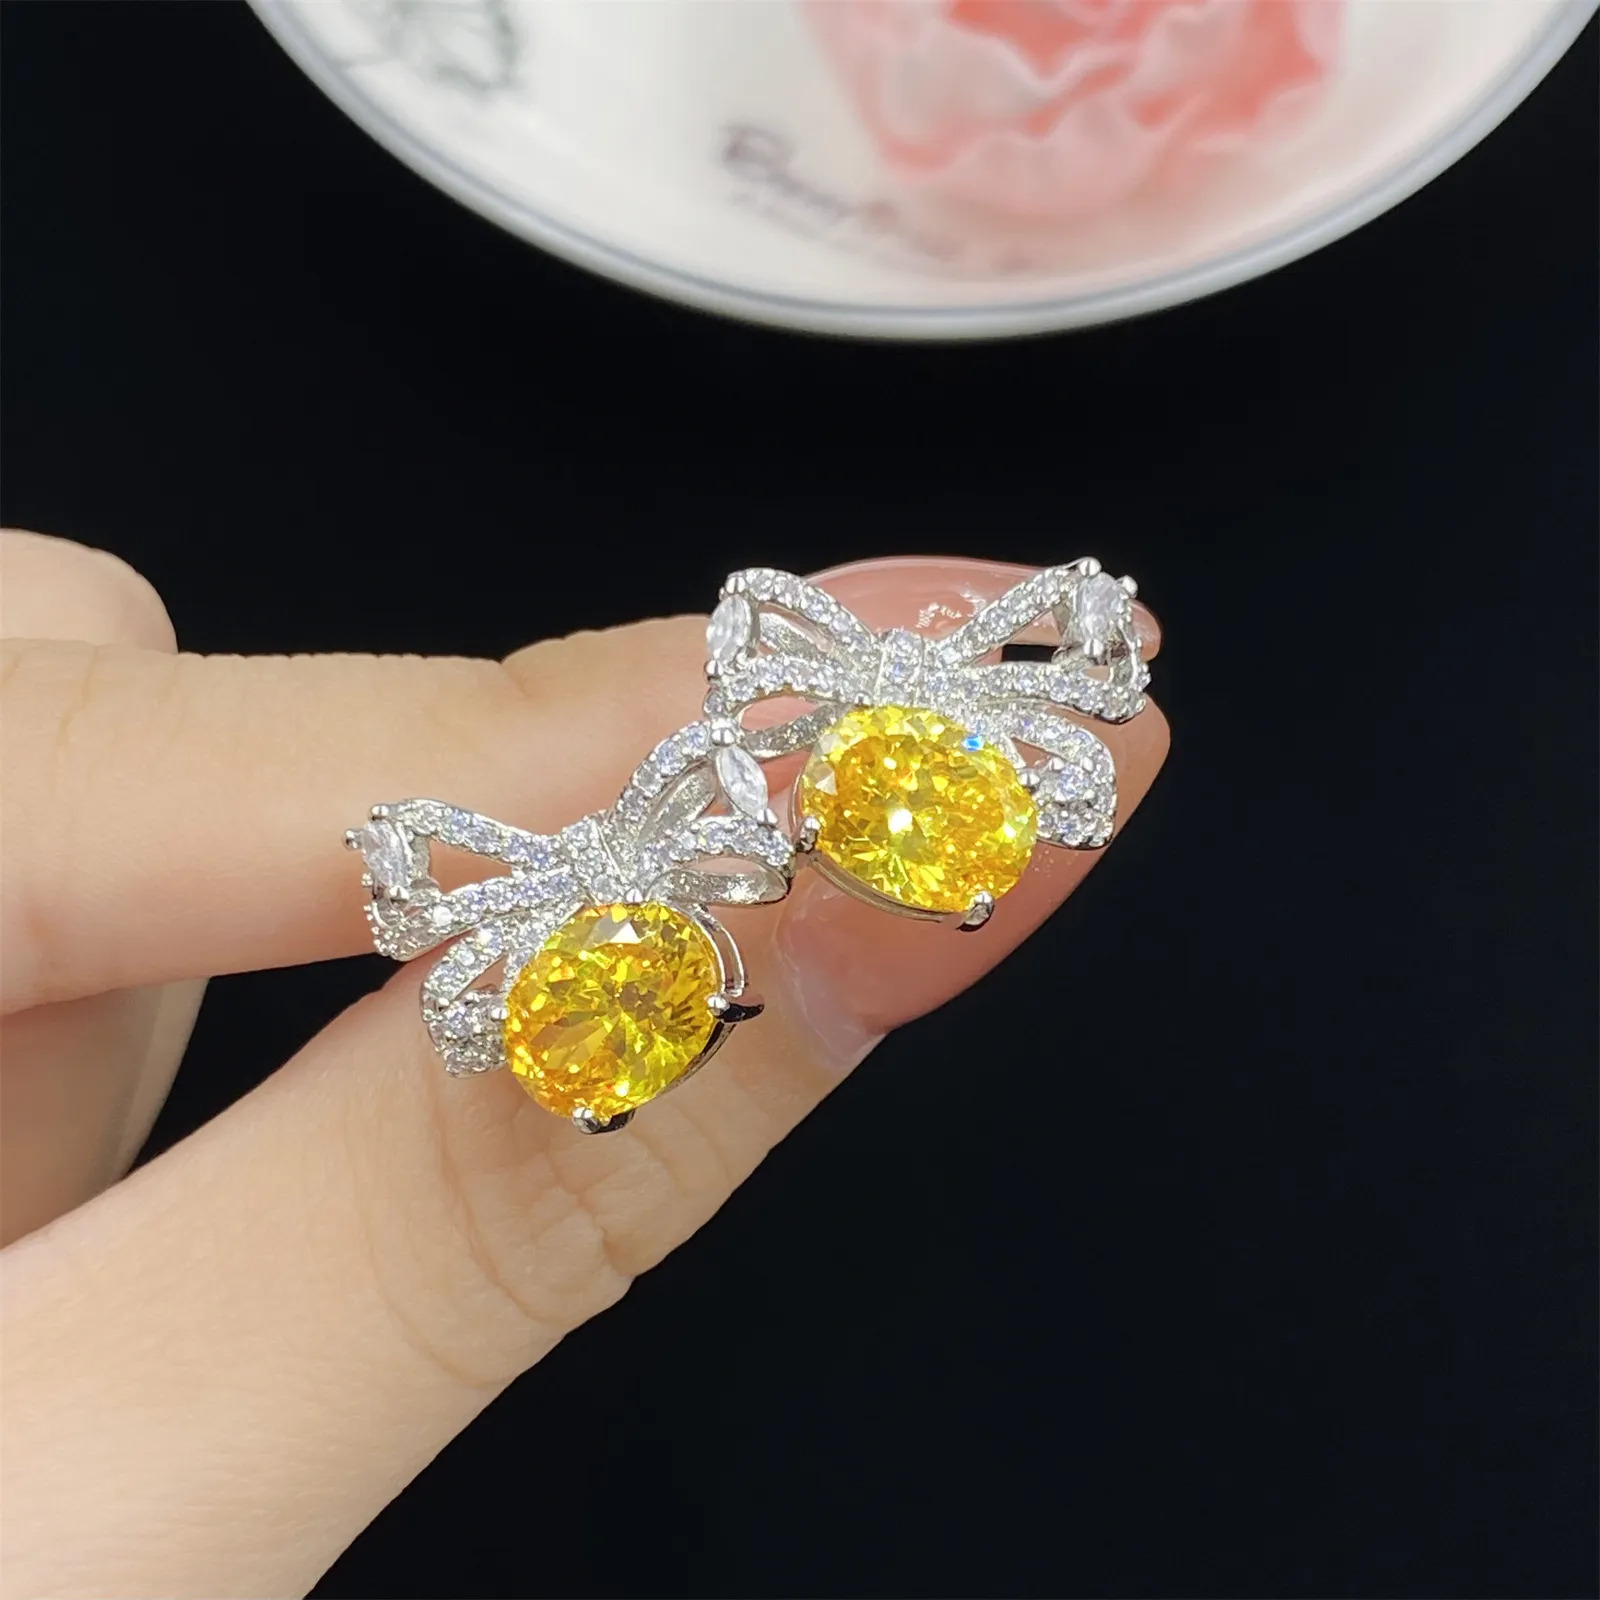 Kvinnliga smycken Bowknot Crystal Zircon Diamond White Gold Plated Earrings Studs Girl Girl Student Birthday Present